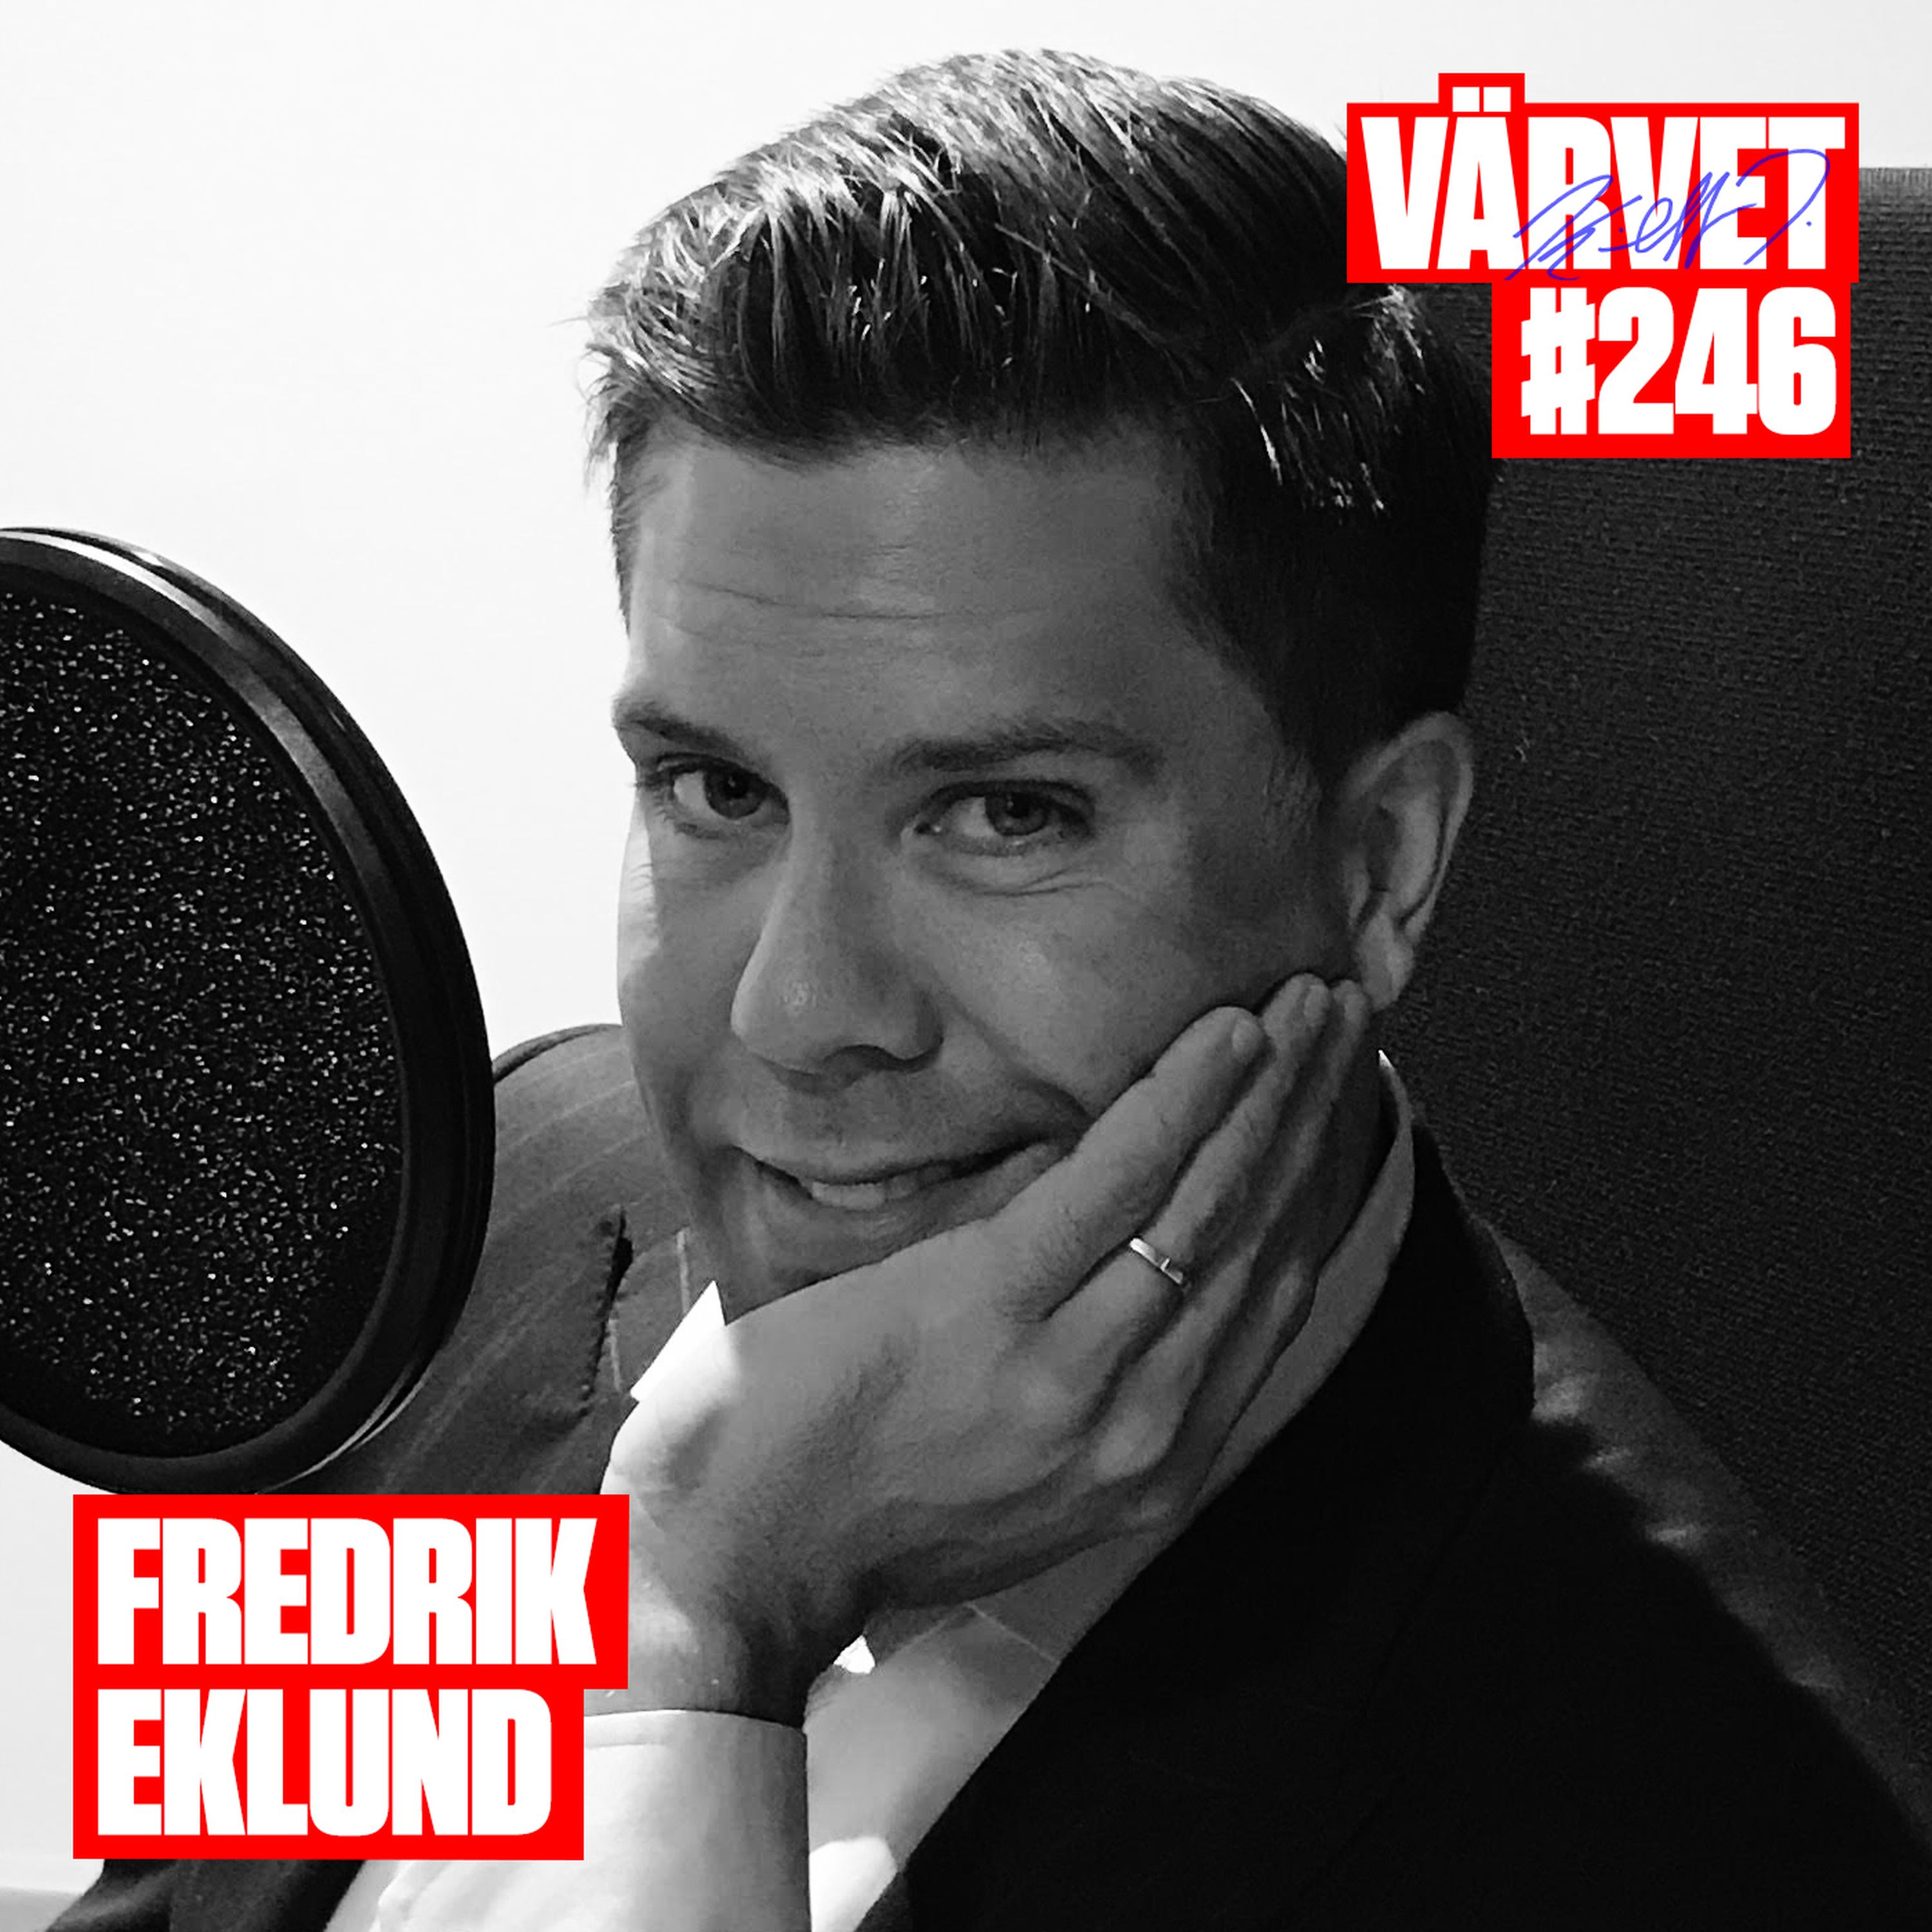 #246: Fredrik Eklund